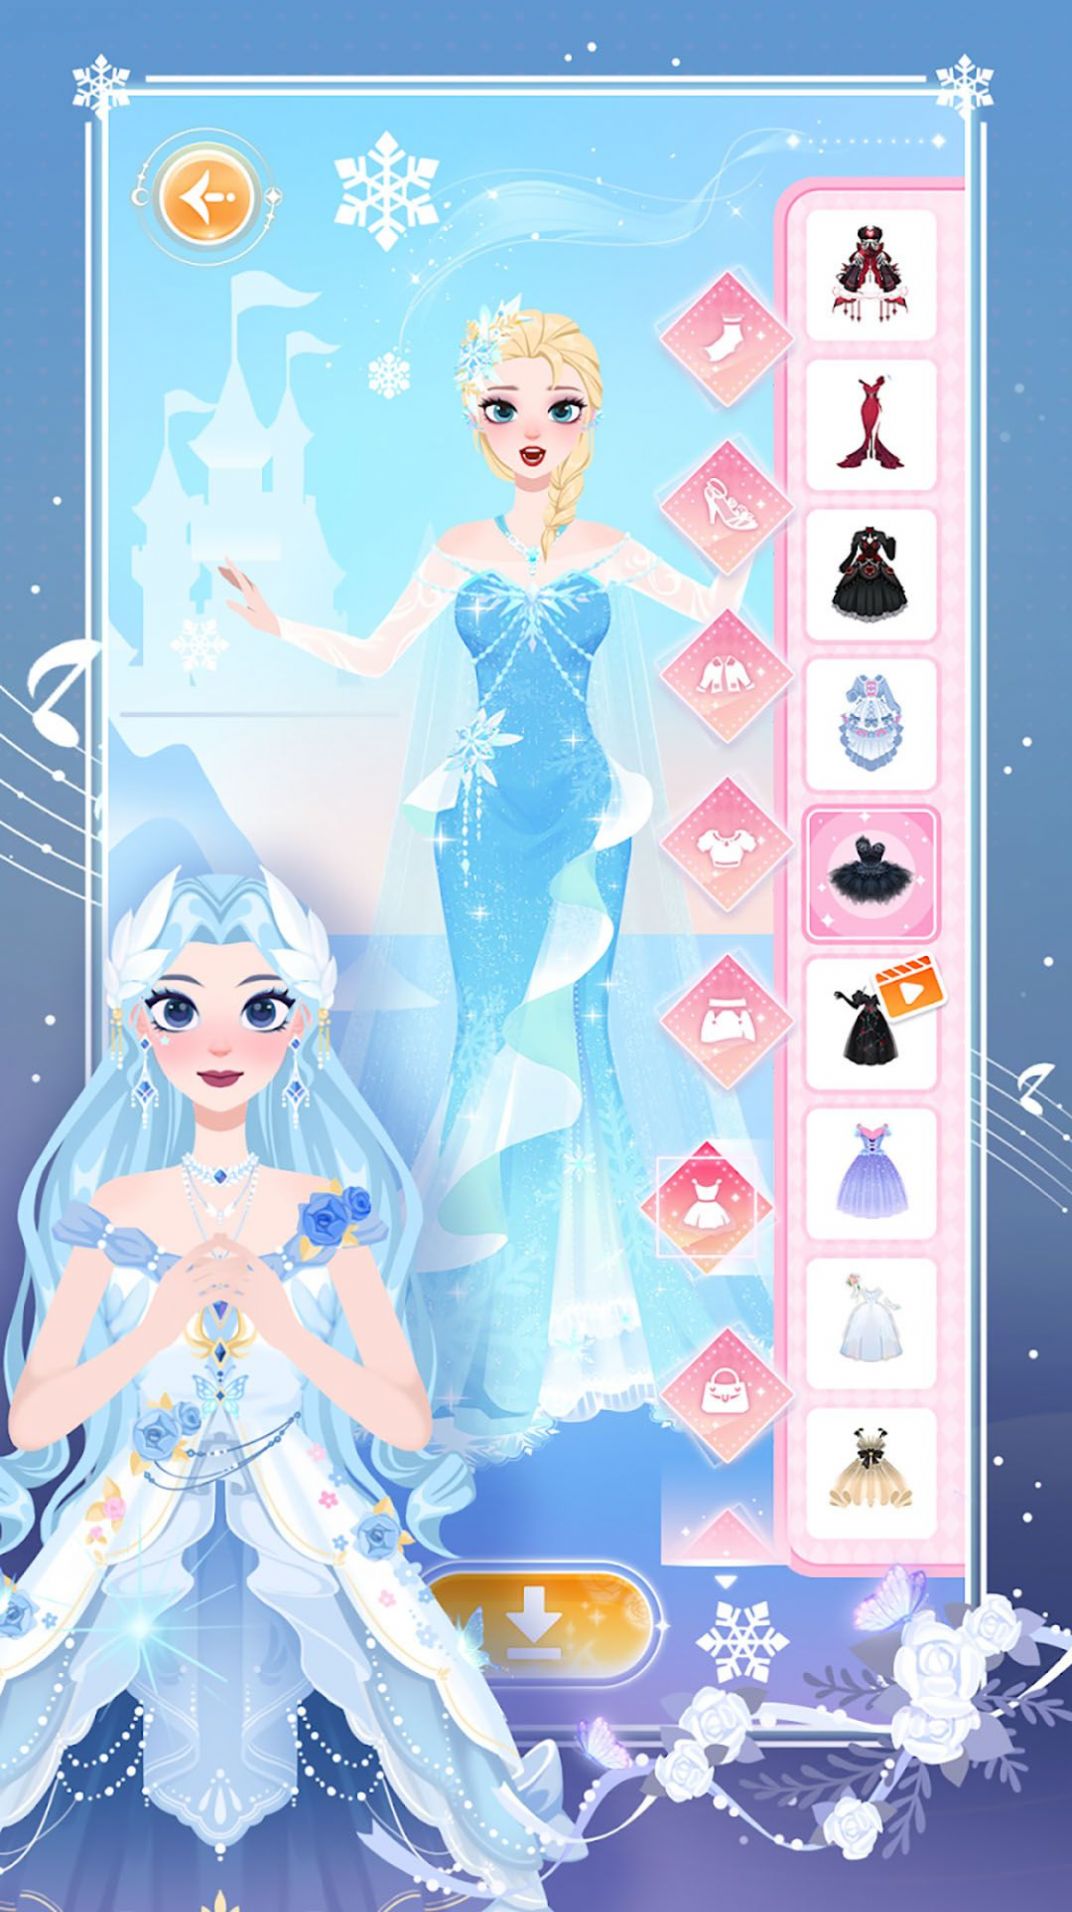 梦幻公主时尚装饰游戏下载,梦幻公主时尚装饰游戏安卓版 v1.0